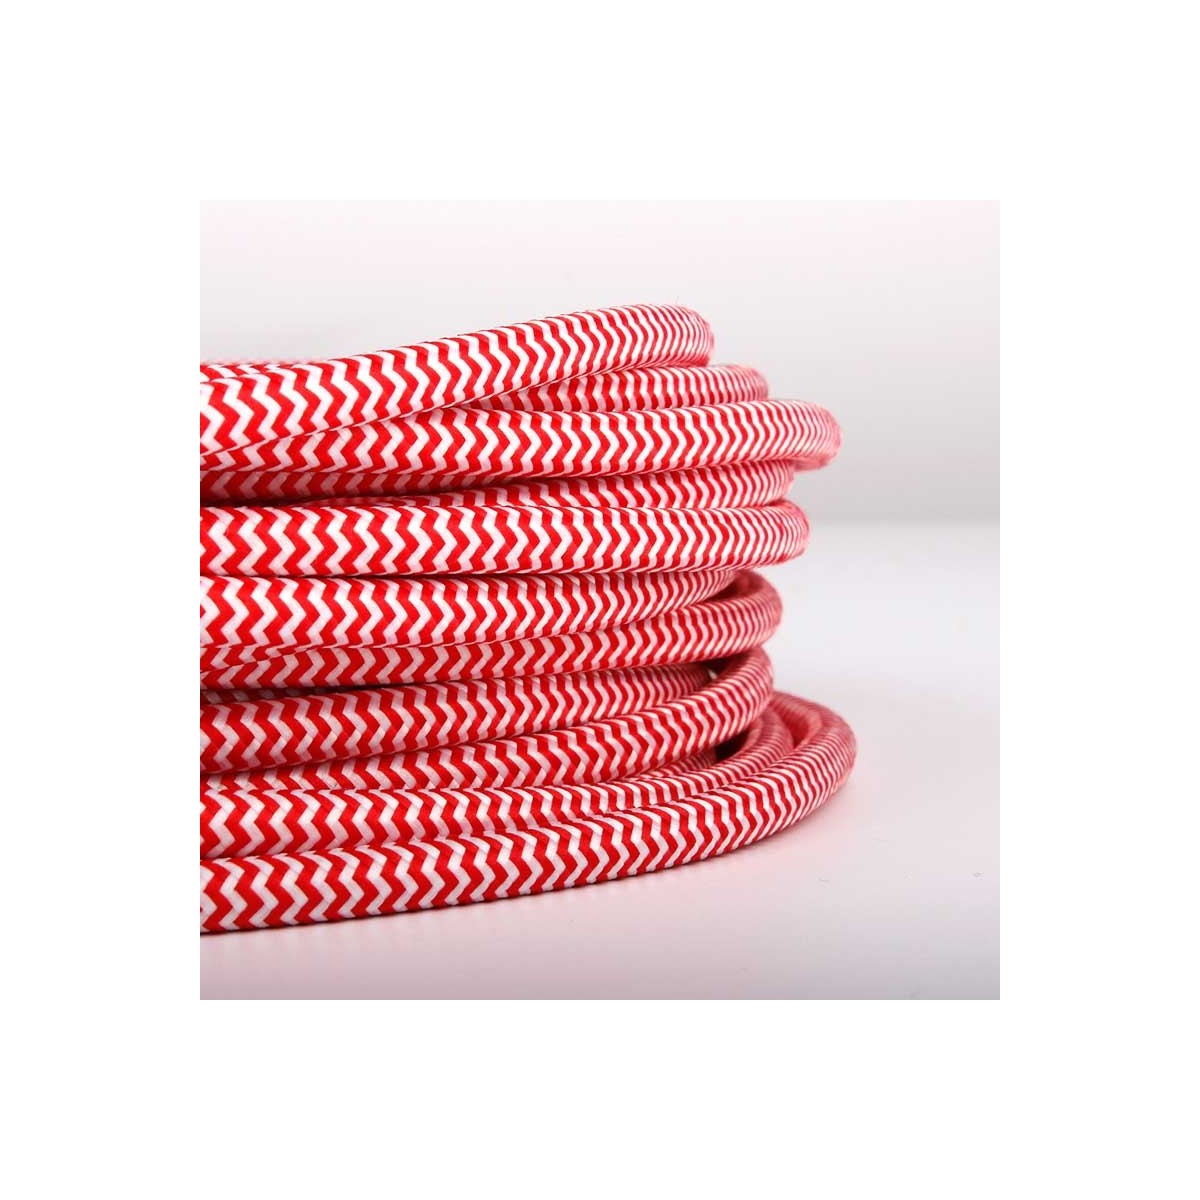 Rundes elektrisches Kabel mit Zickzack-Seideneffekt-Stoff ummantelt, rot und weiß